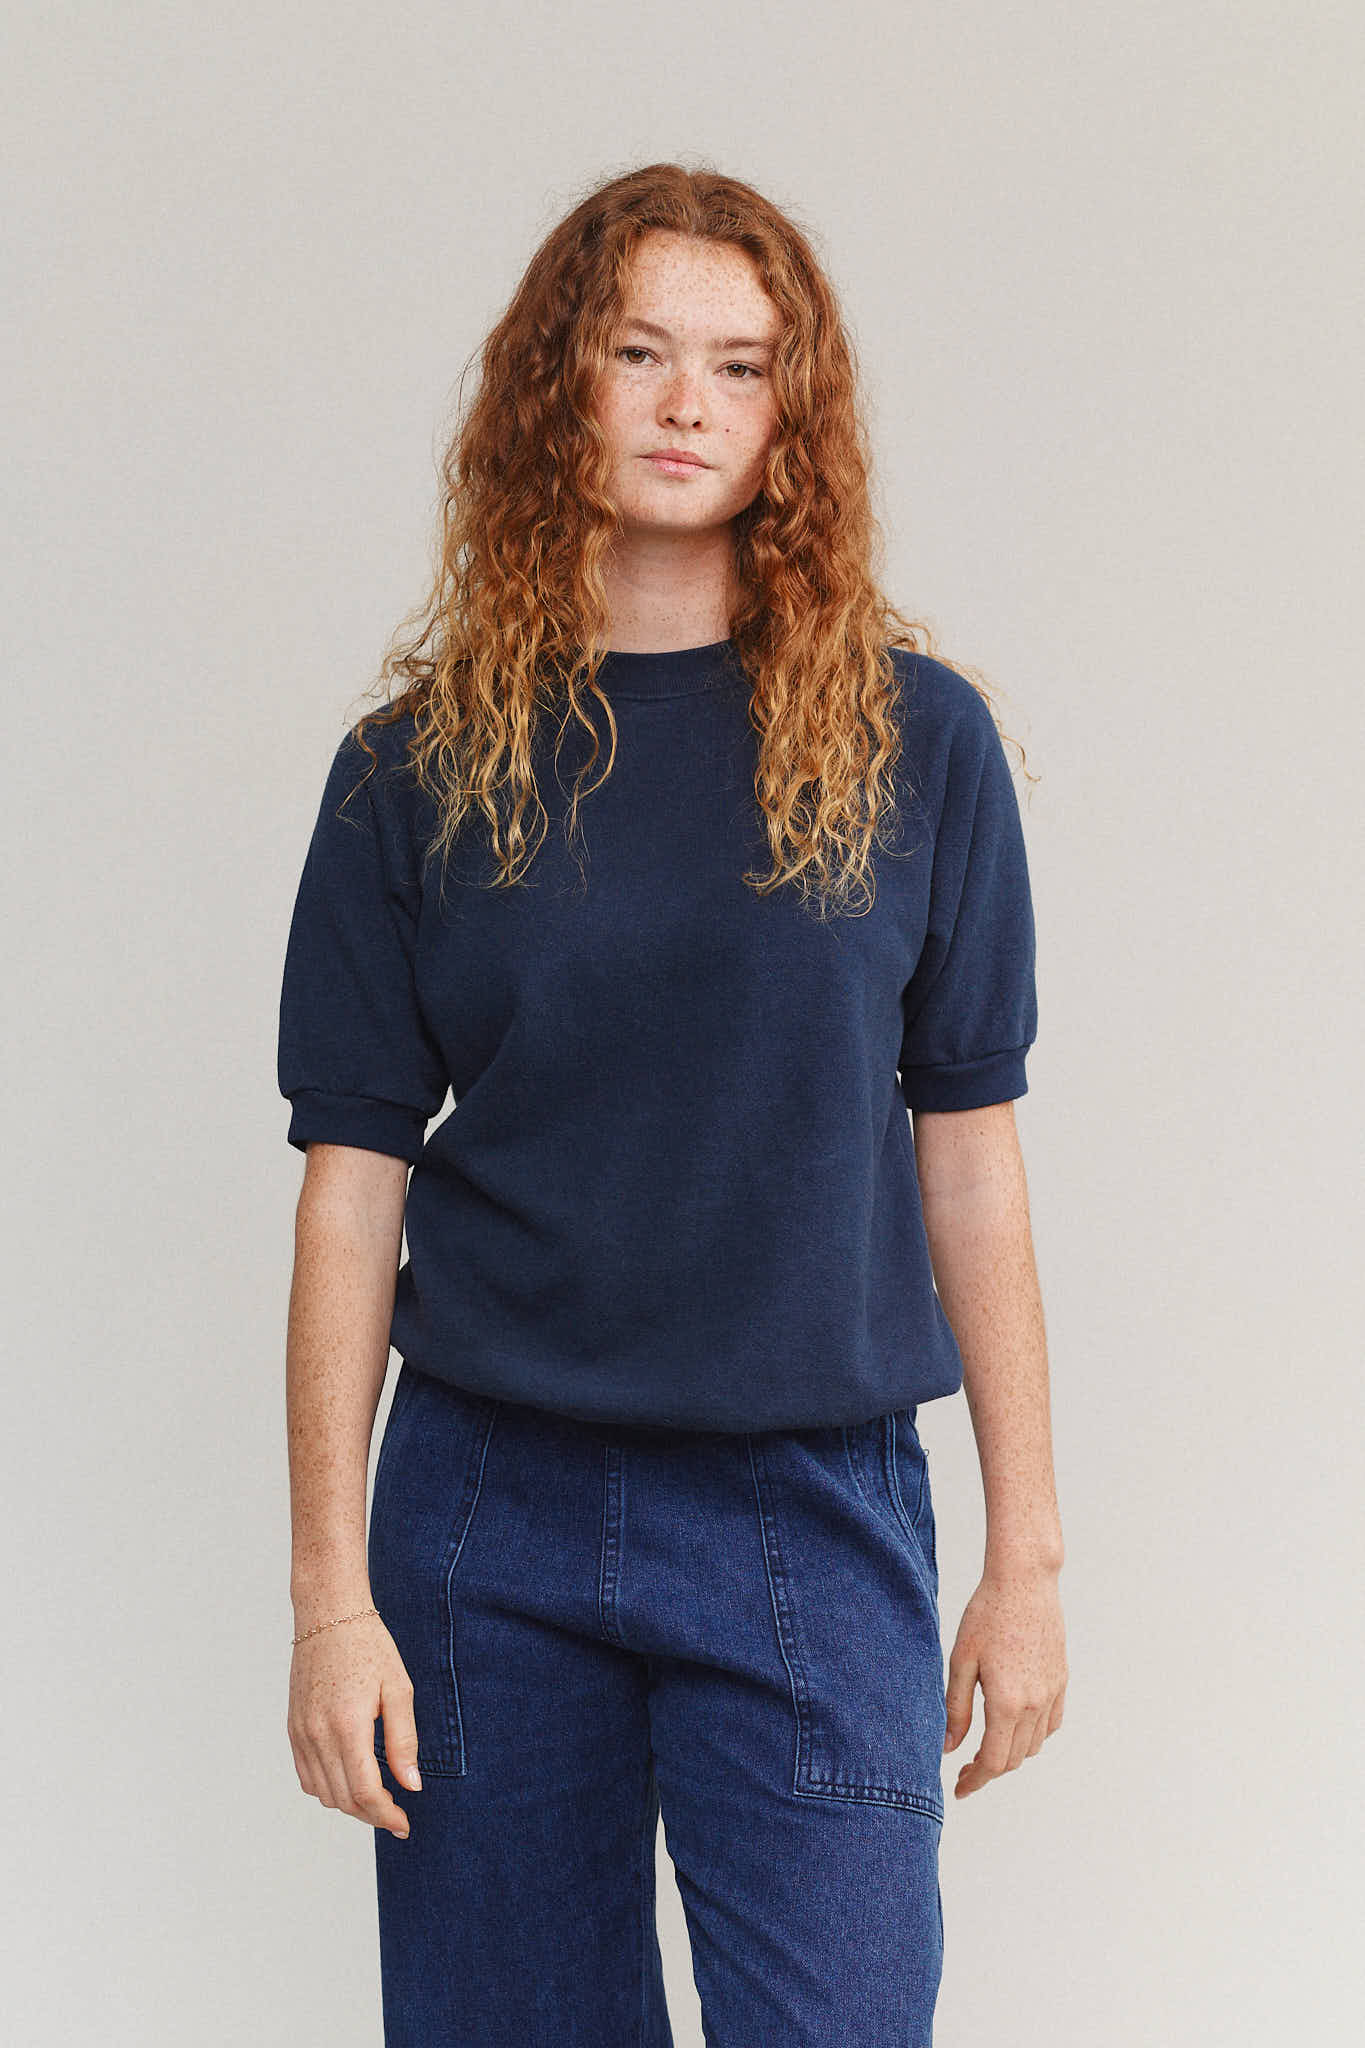 Short Sleeve Raglan Fleece Sweatshirt | Jungmaven Hemp Clothing & Accessories / model_desc: Sydney is  5’8” wearing Small